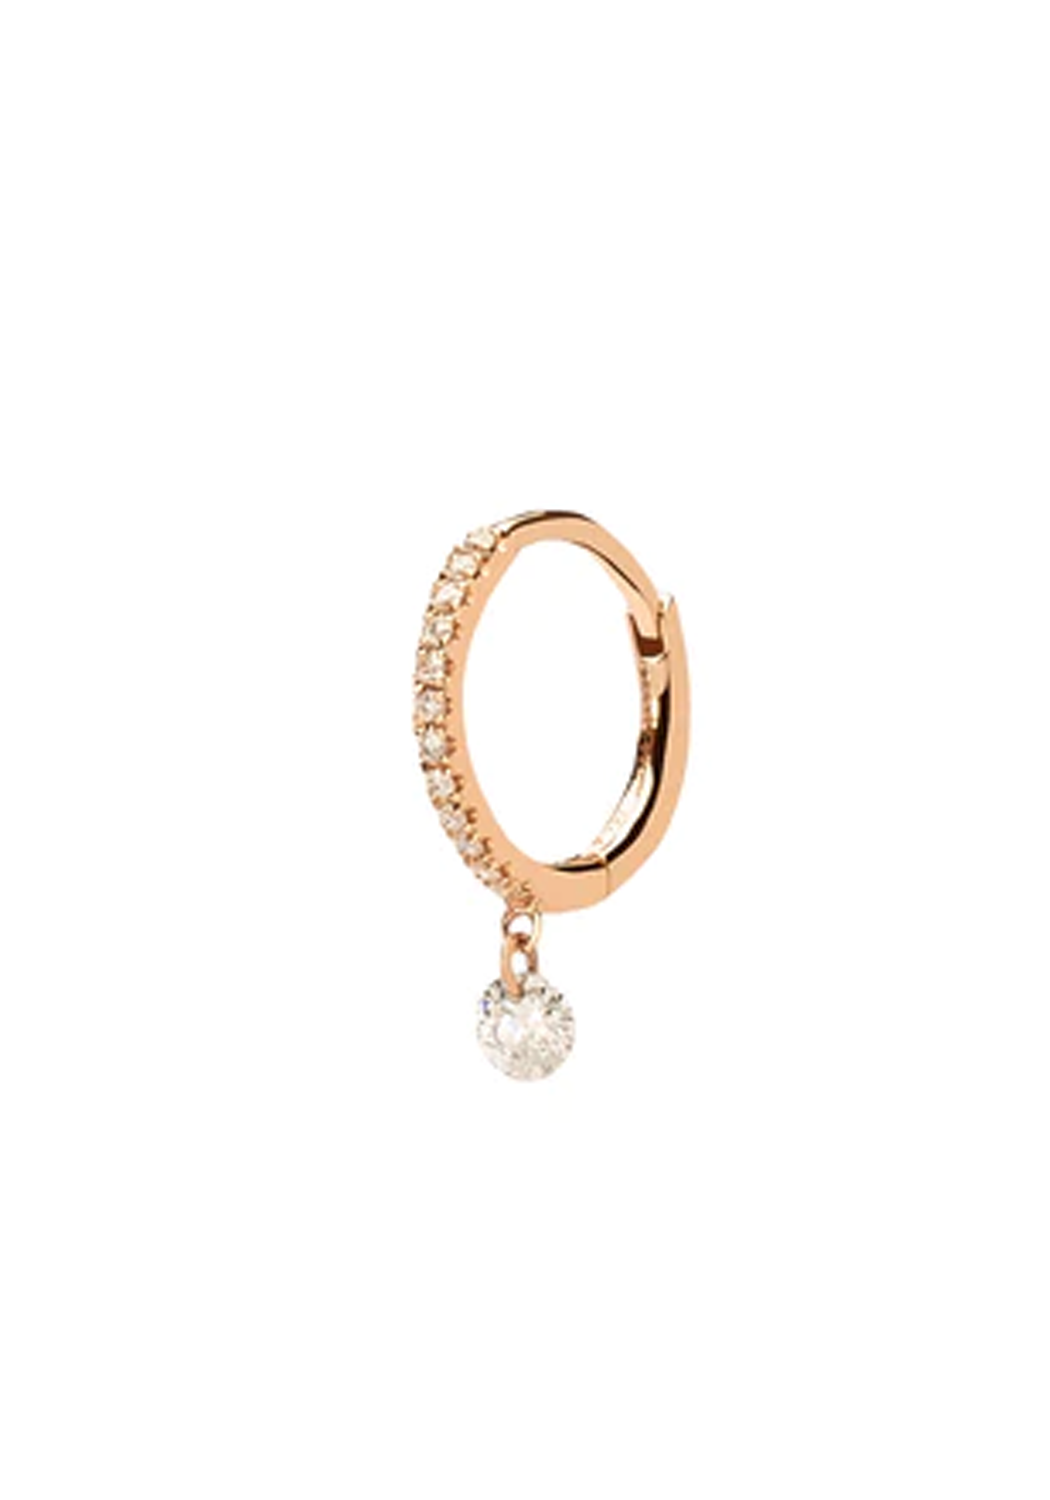 Persée Paris 18K Gold Solitaire Pavé Diamond Hoop Earring | Choose Gold